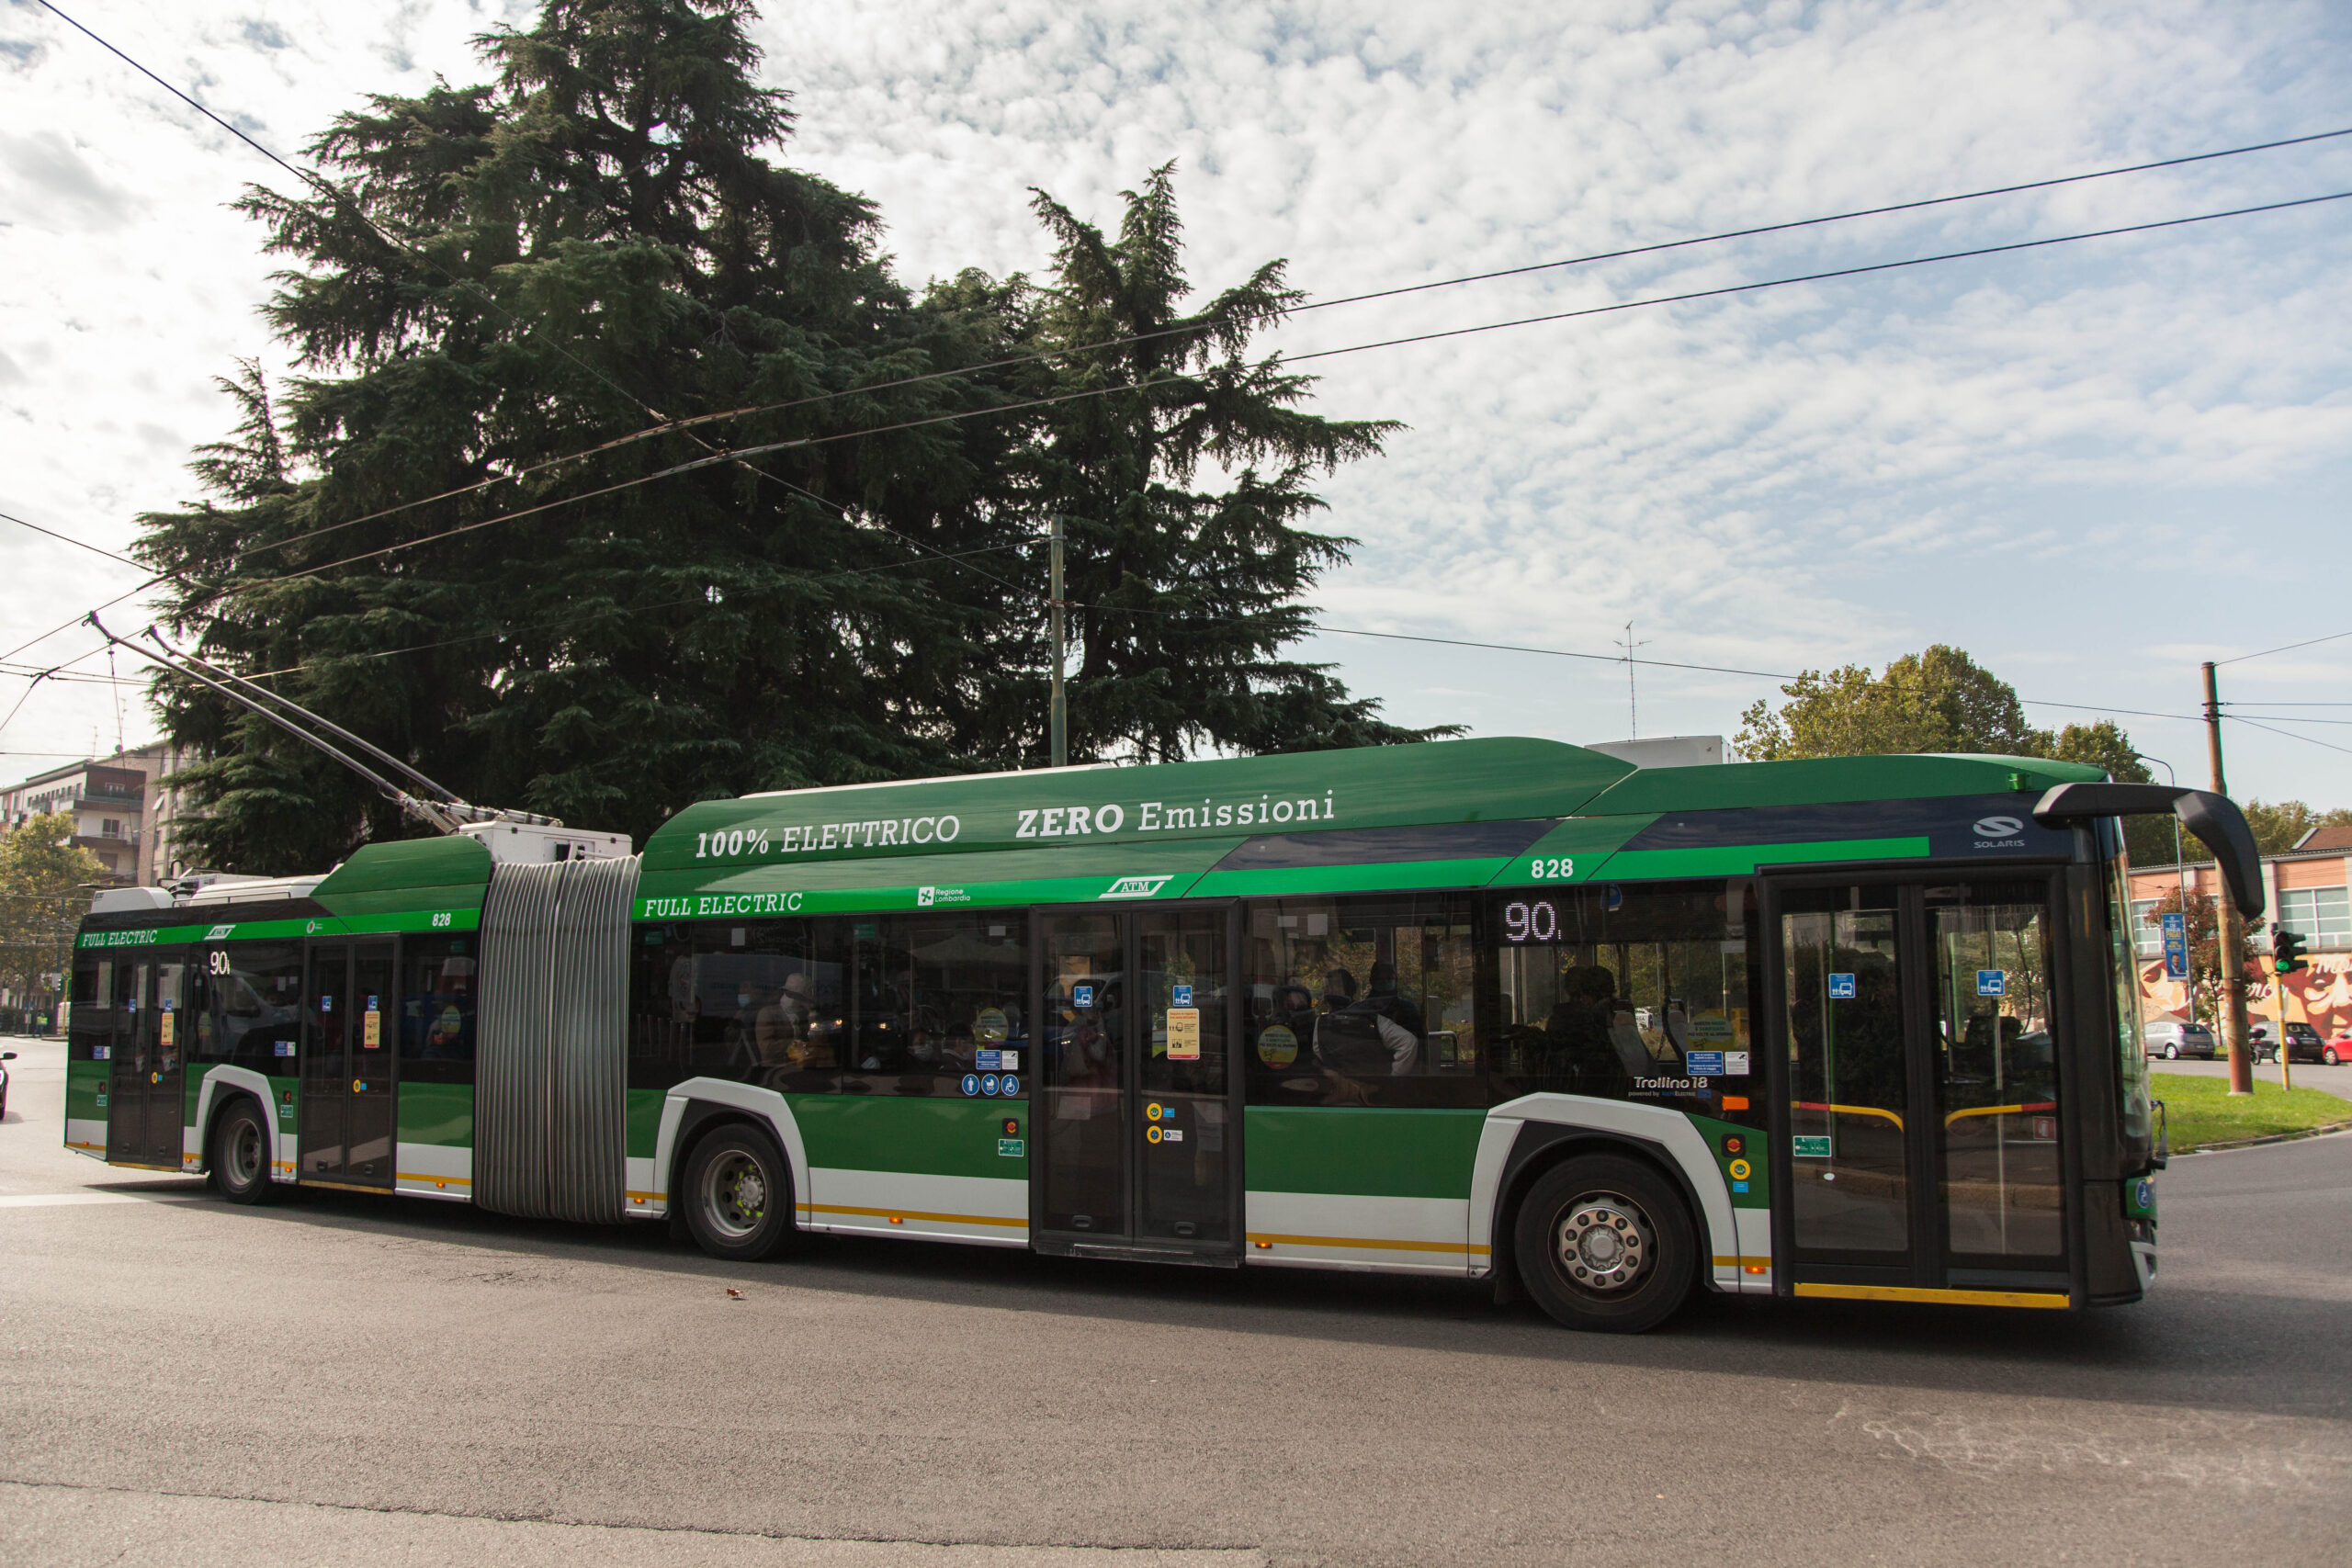 A predominantly green bus